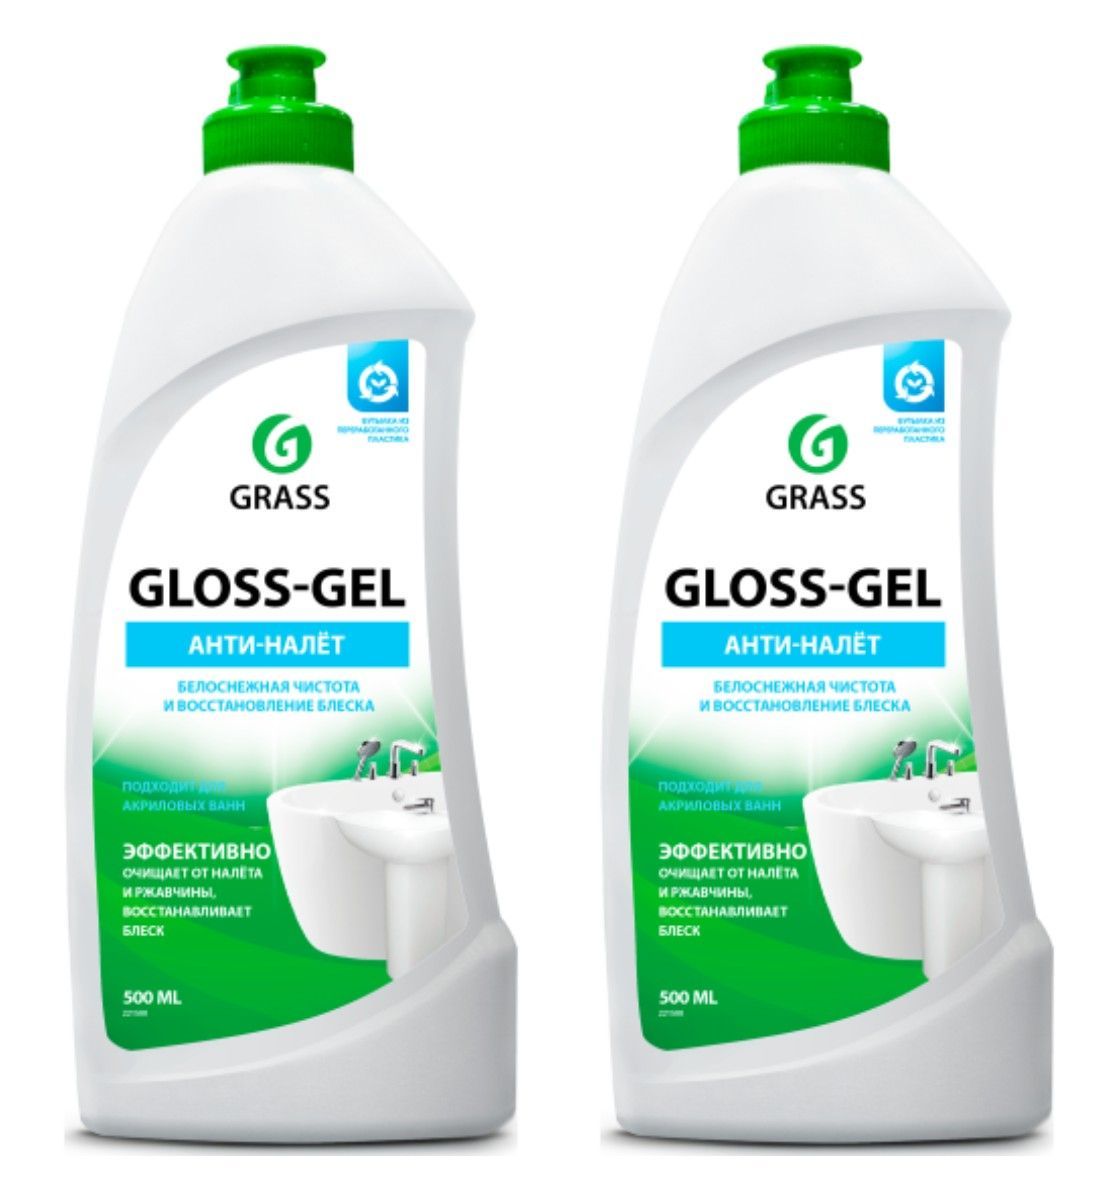 Grass gel отзывы. Средство для ванны Грасс. Grass гель для ванной комнаты Gloss Gel. Грасс СОБЩЕЕ для ванны. Средство для ванной Грасс черный.